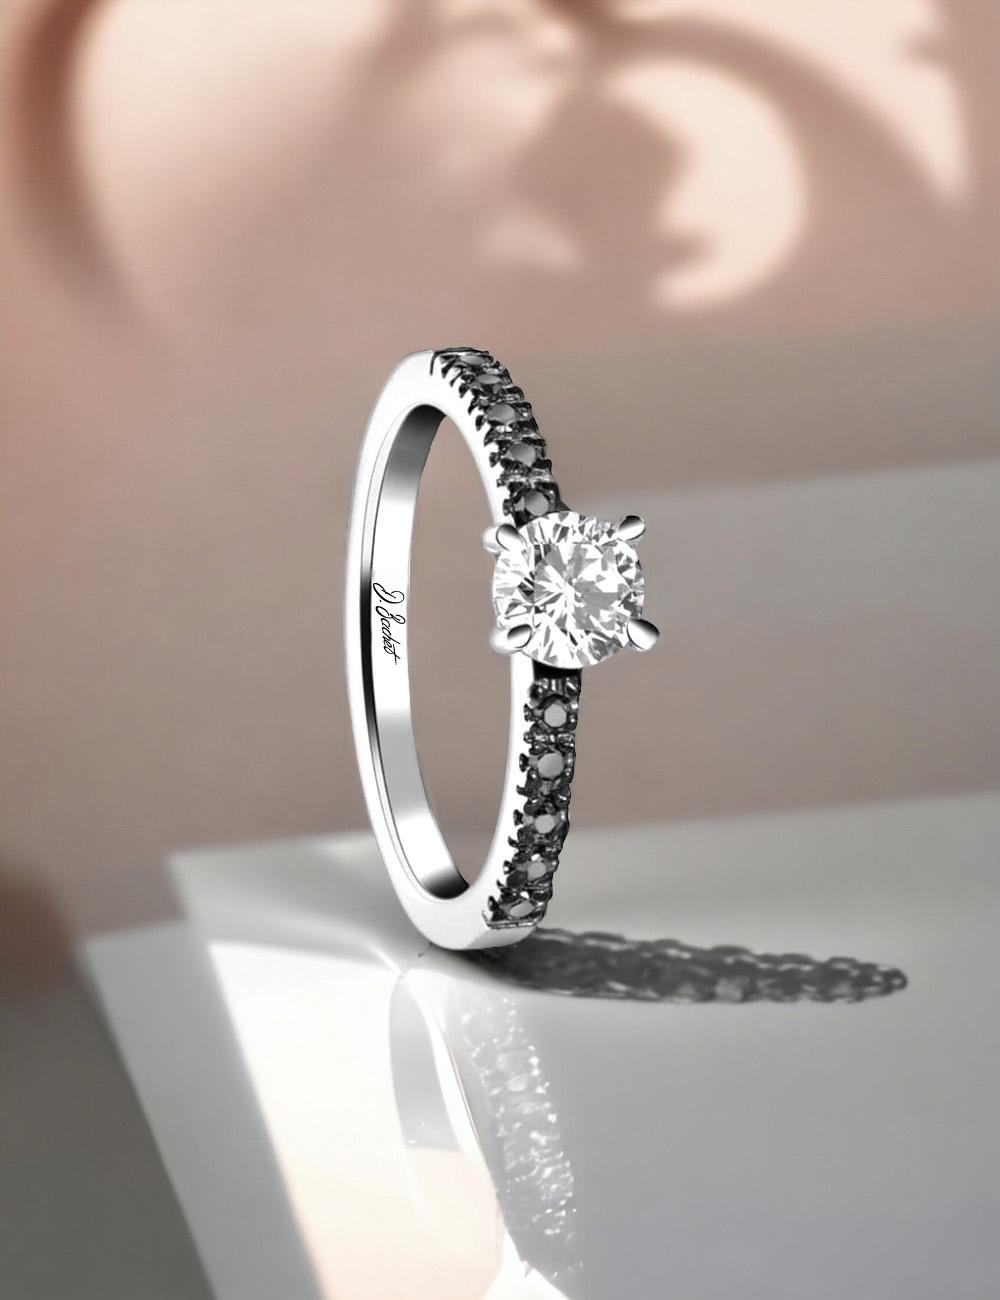 Bague fiançailles: platine, diamant blanc central, diamants noirs pavés, monture serti griffes.